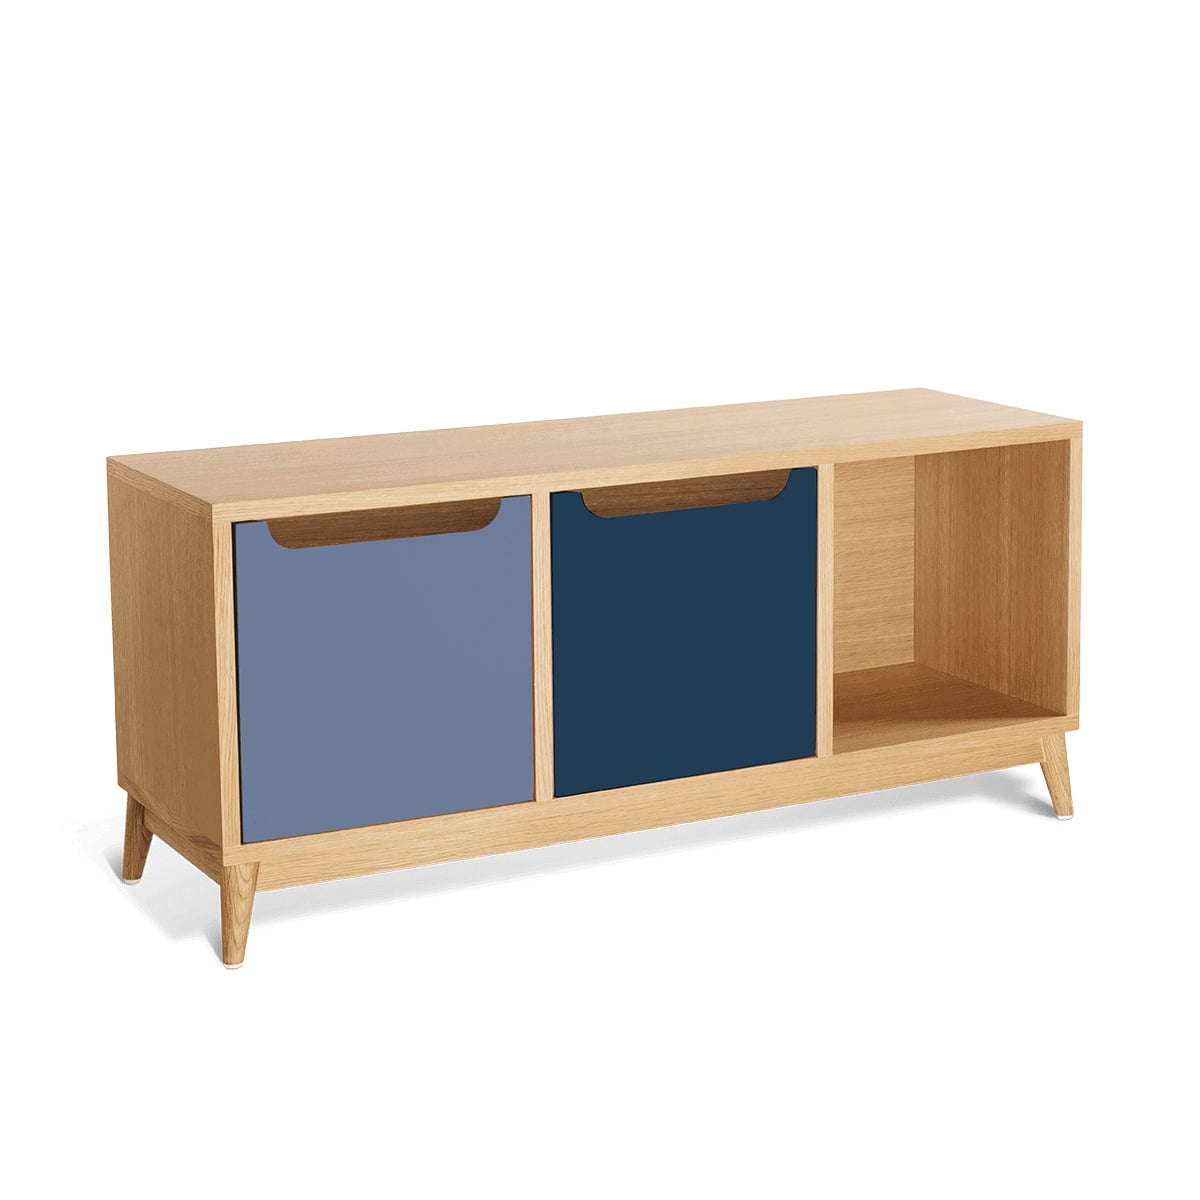 meuble bas à tiroirs KILT de la marque Kulile en chêne naturel et duo de bleu